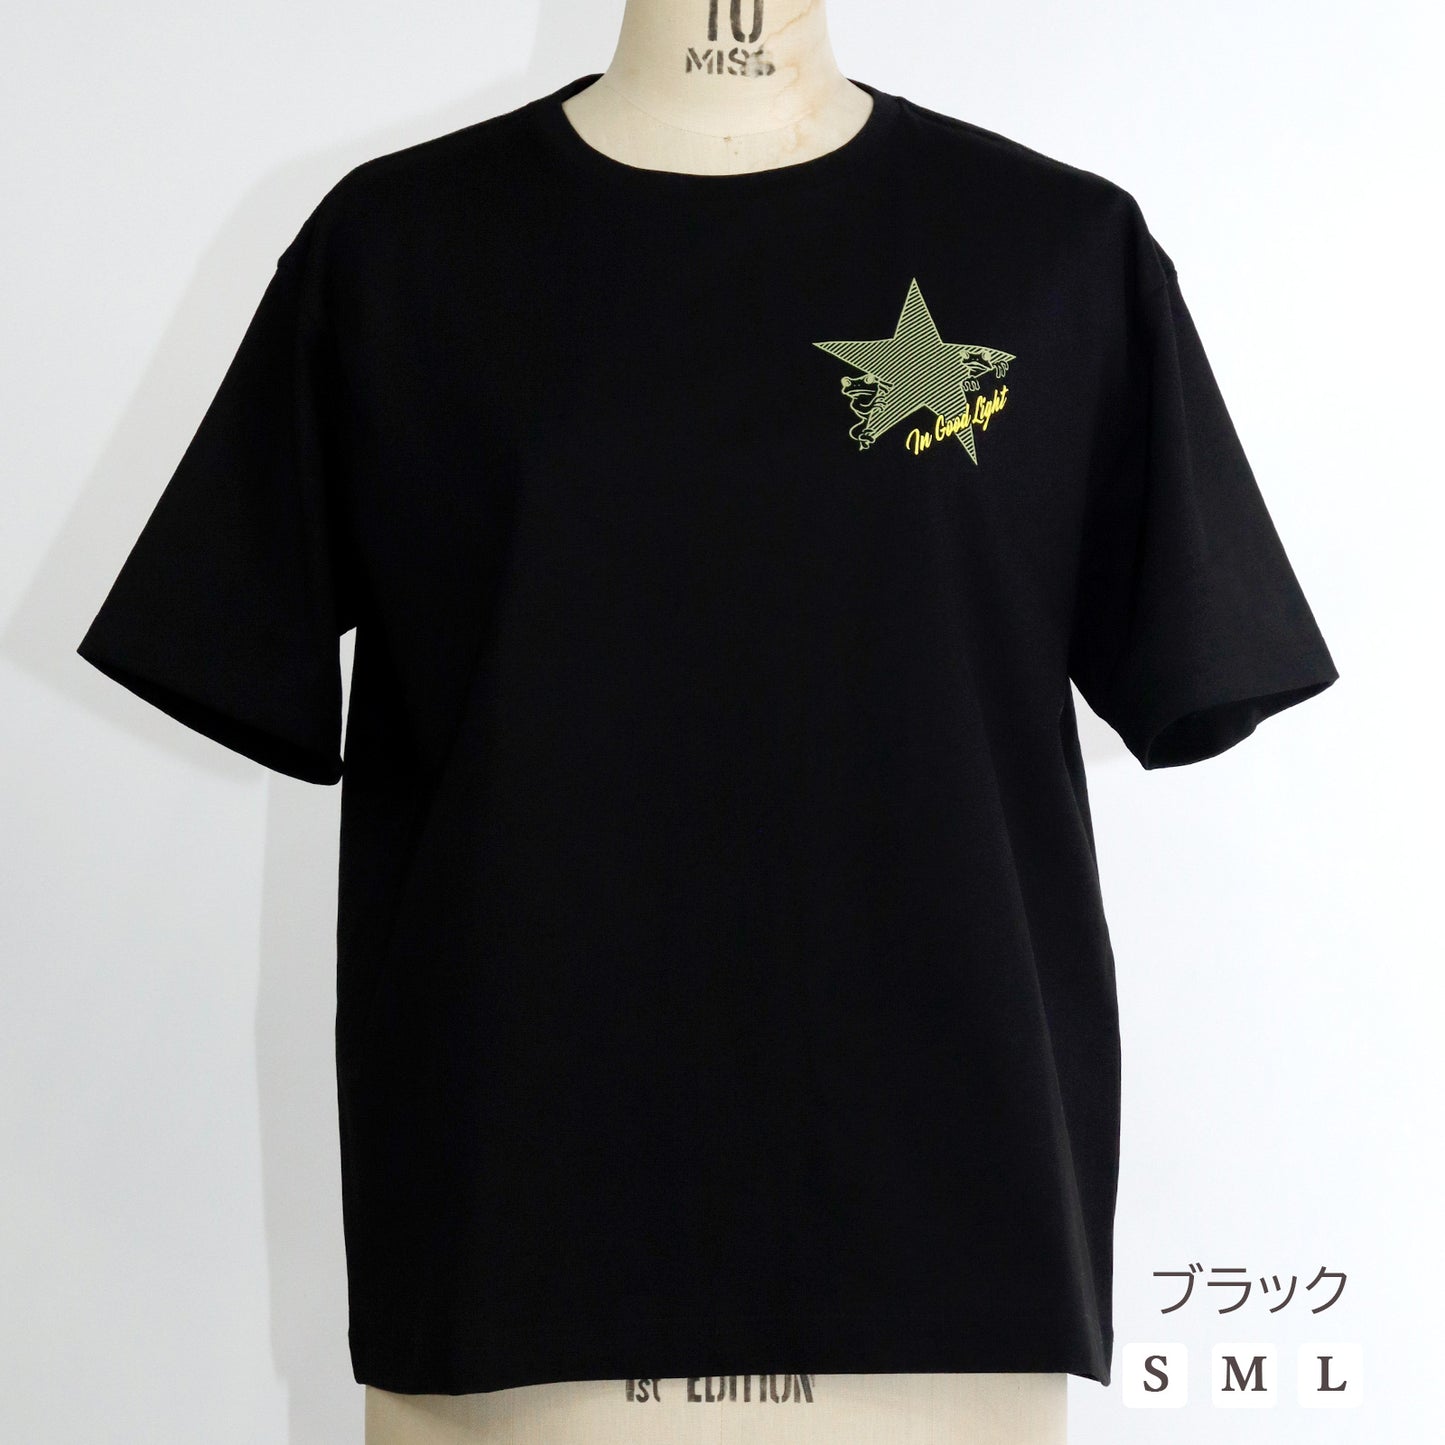 双子カエルプリントTシャツ【小柄女性向け 小さいサイズ対応】